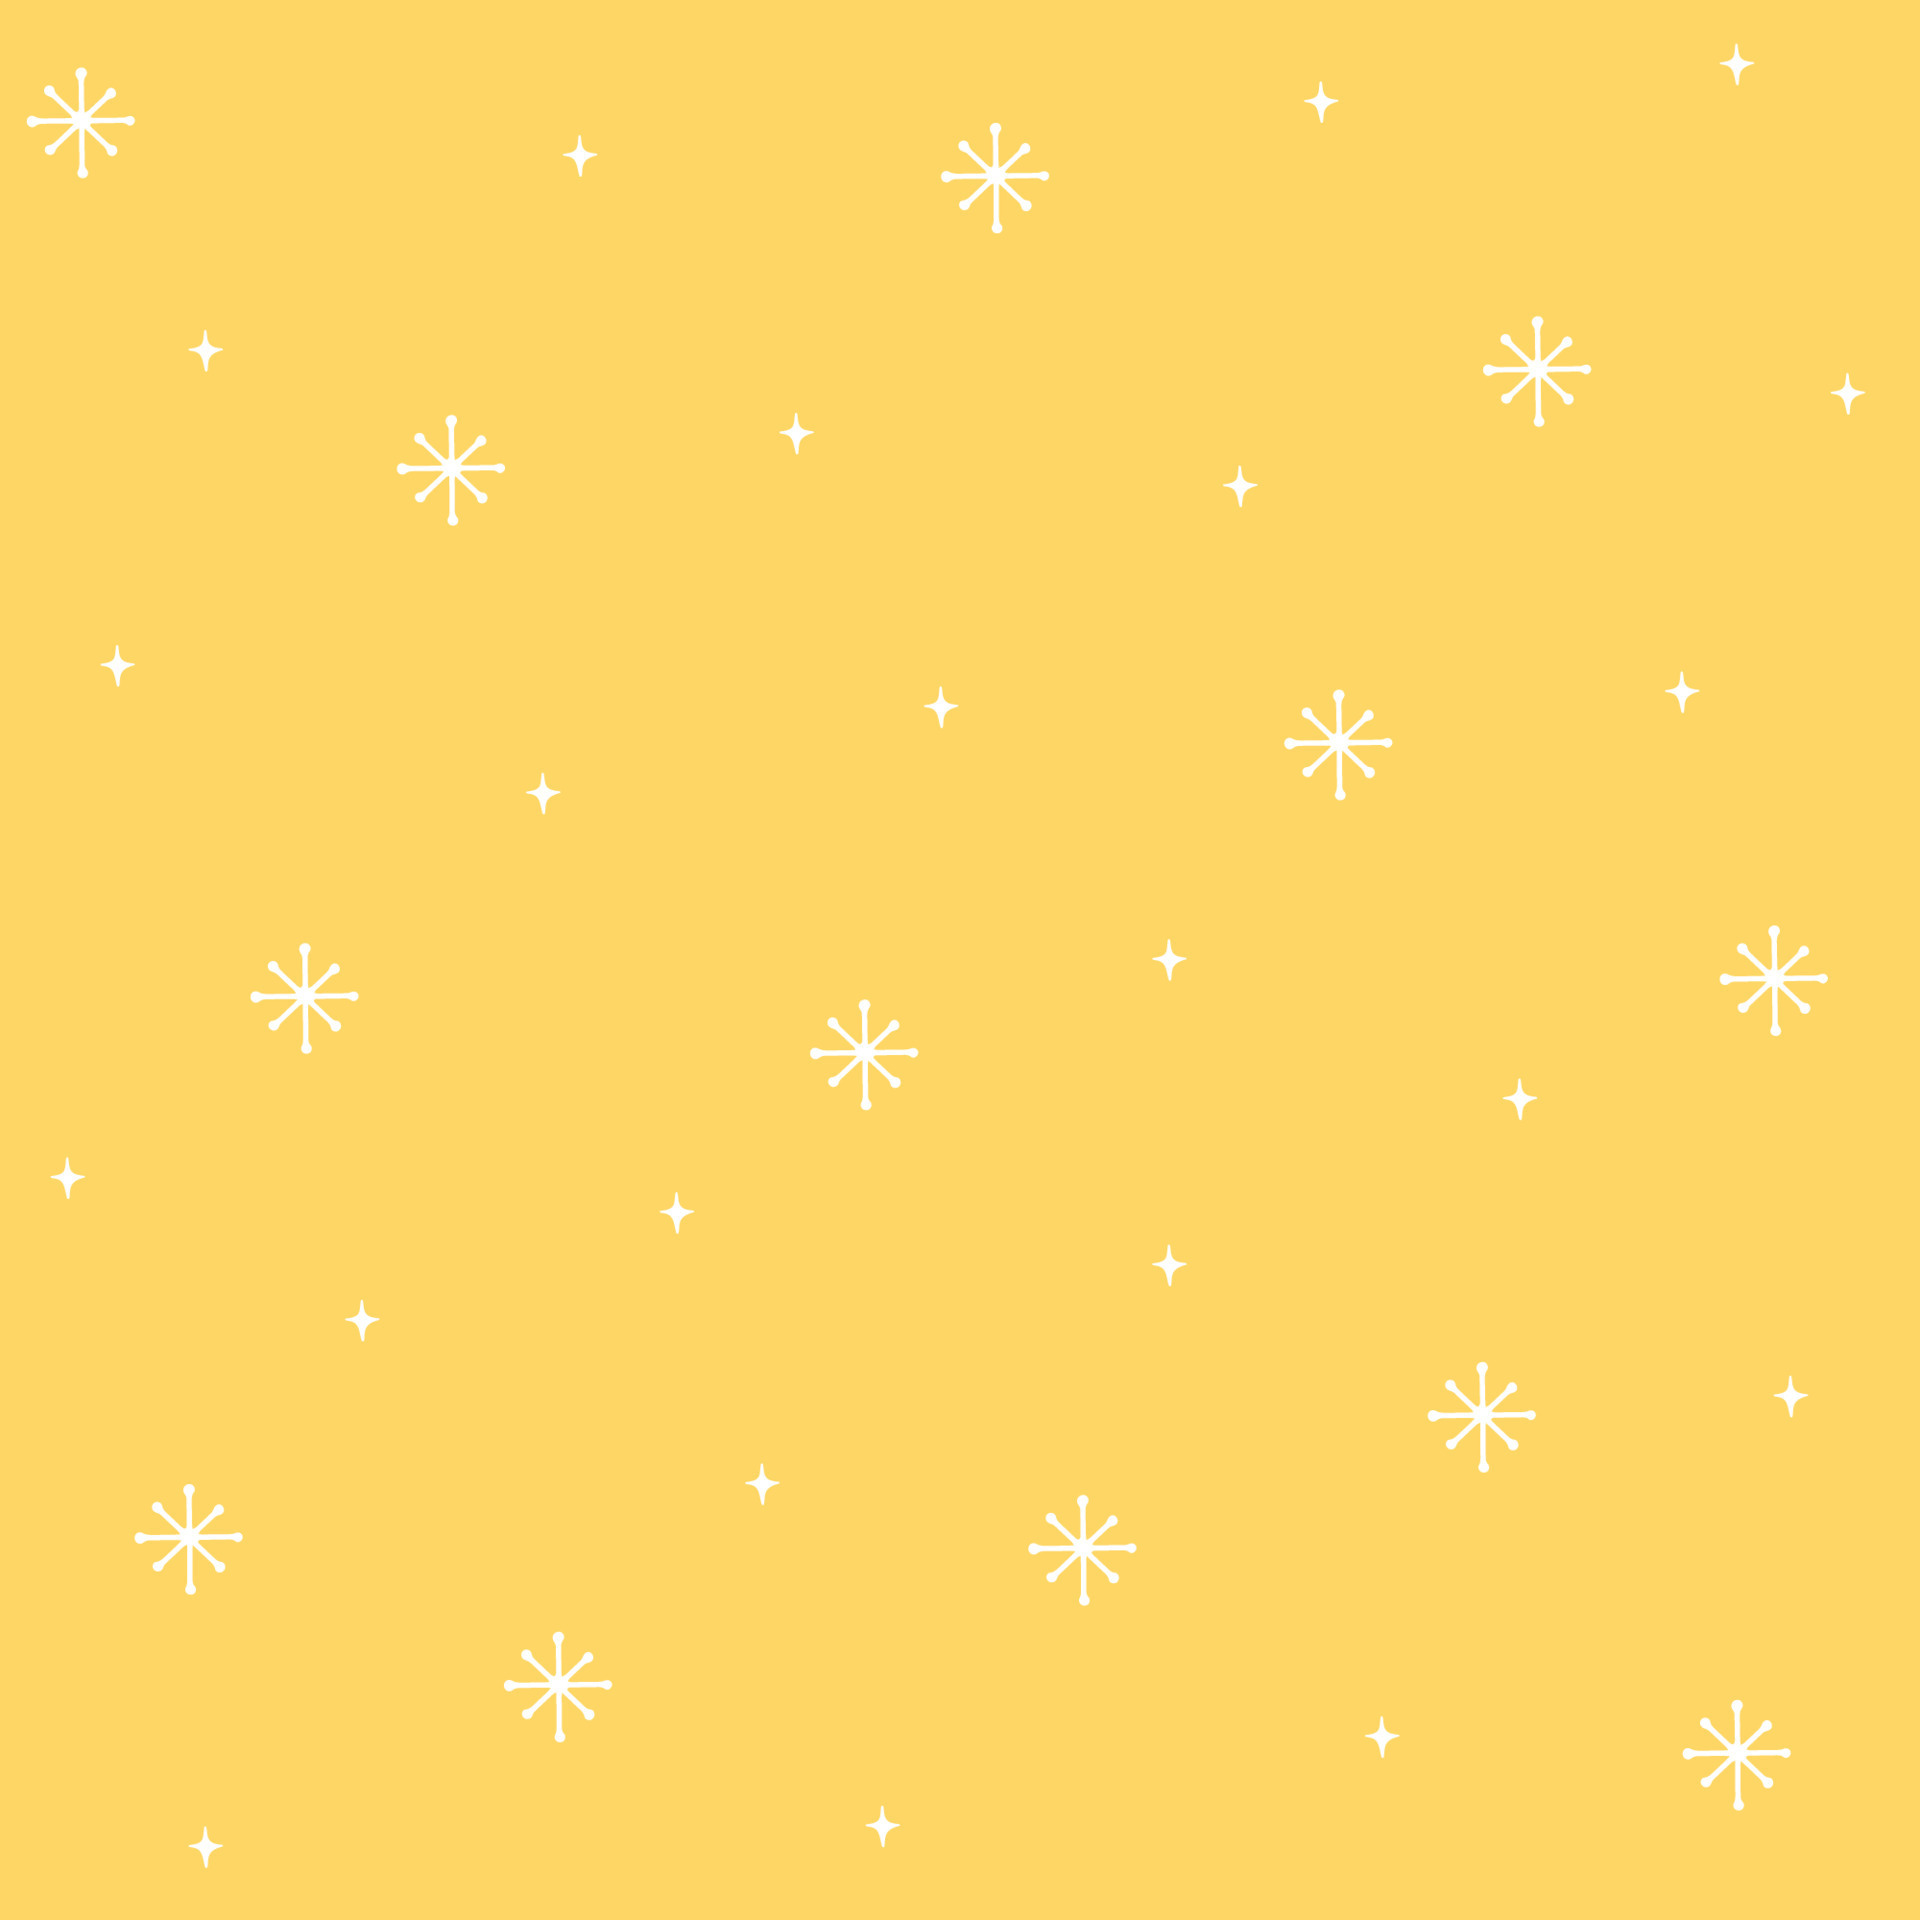 Hãy thưởng thức mẫu vải hoa văn tuyết đơn giản, tuyết trắng trên nền vàng sẽ đưa bạn đến với không gian Giáng sinh thanh bình và yên tĩnh. Hình ảnh này sẽ giúp cho bạn trang trí thật lung linh và tạo ra một không gian Giáng sinh đáng nhớ.